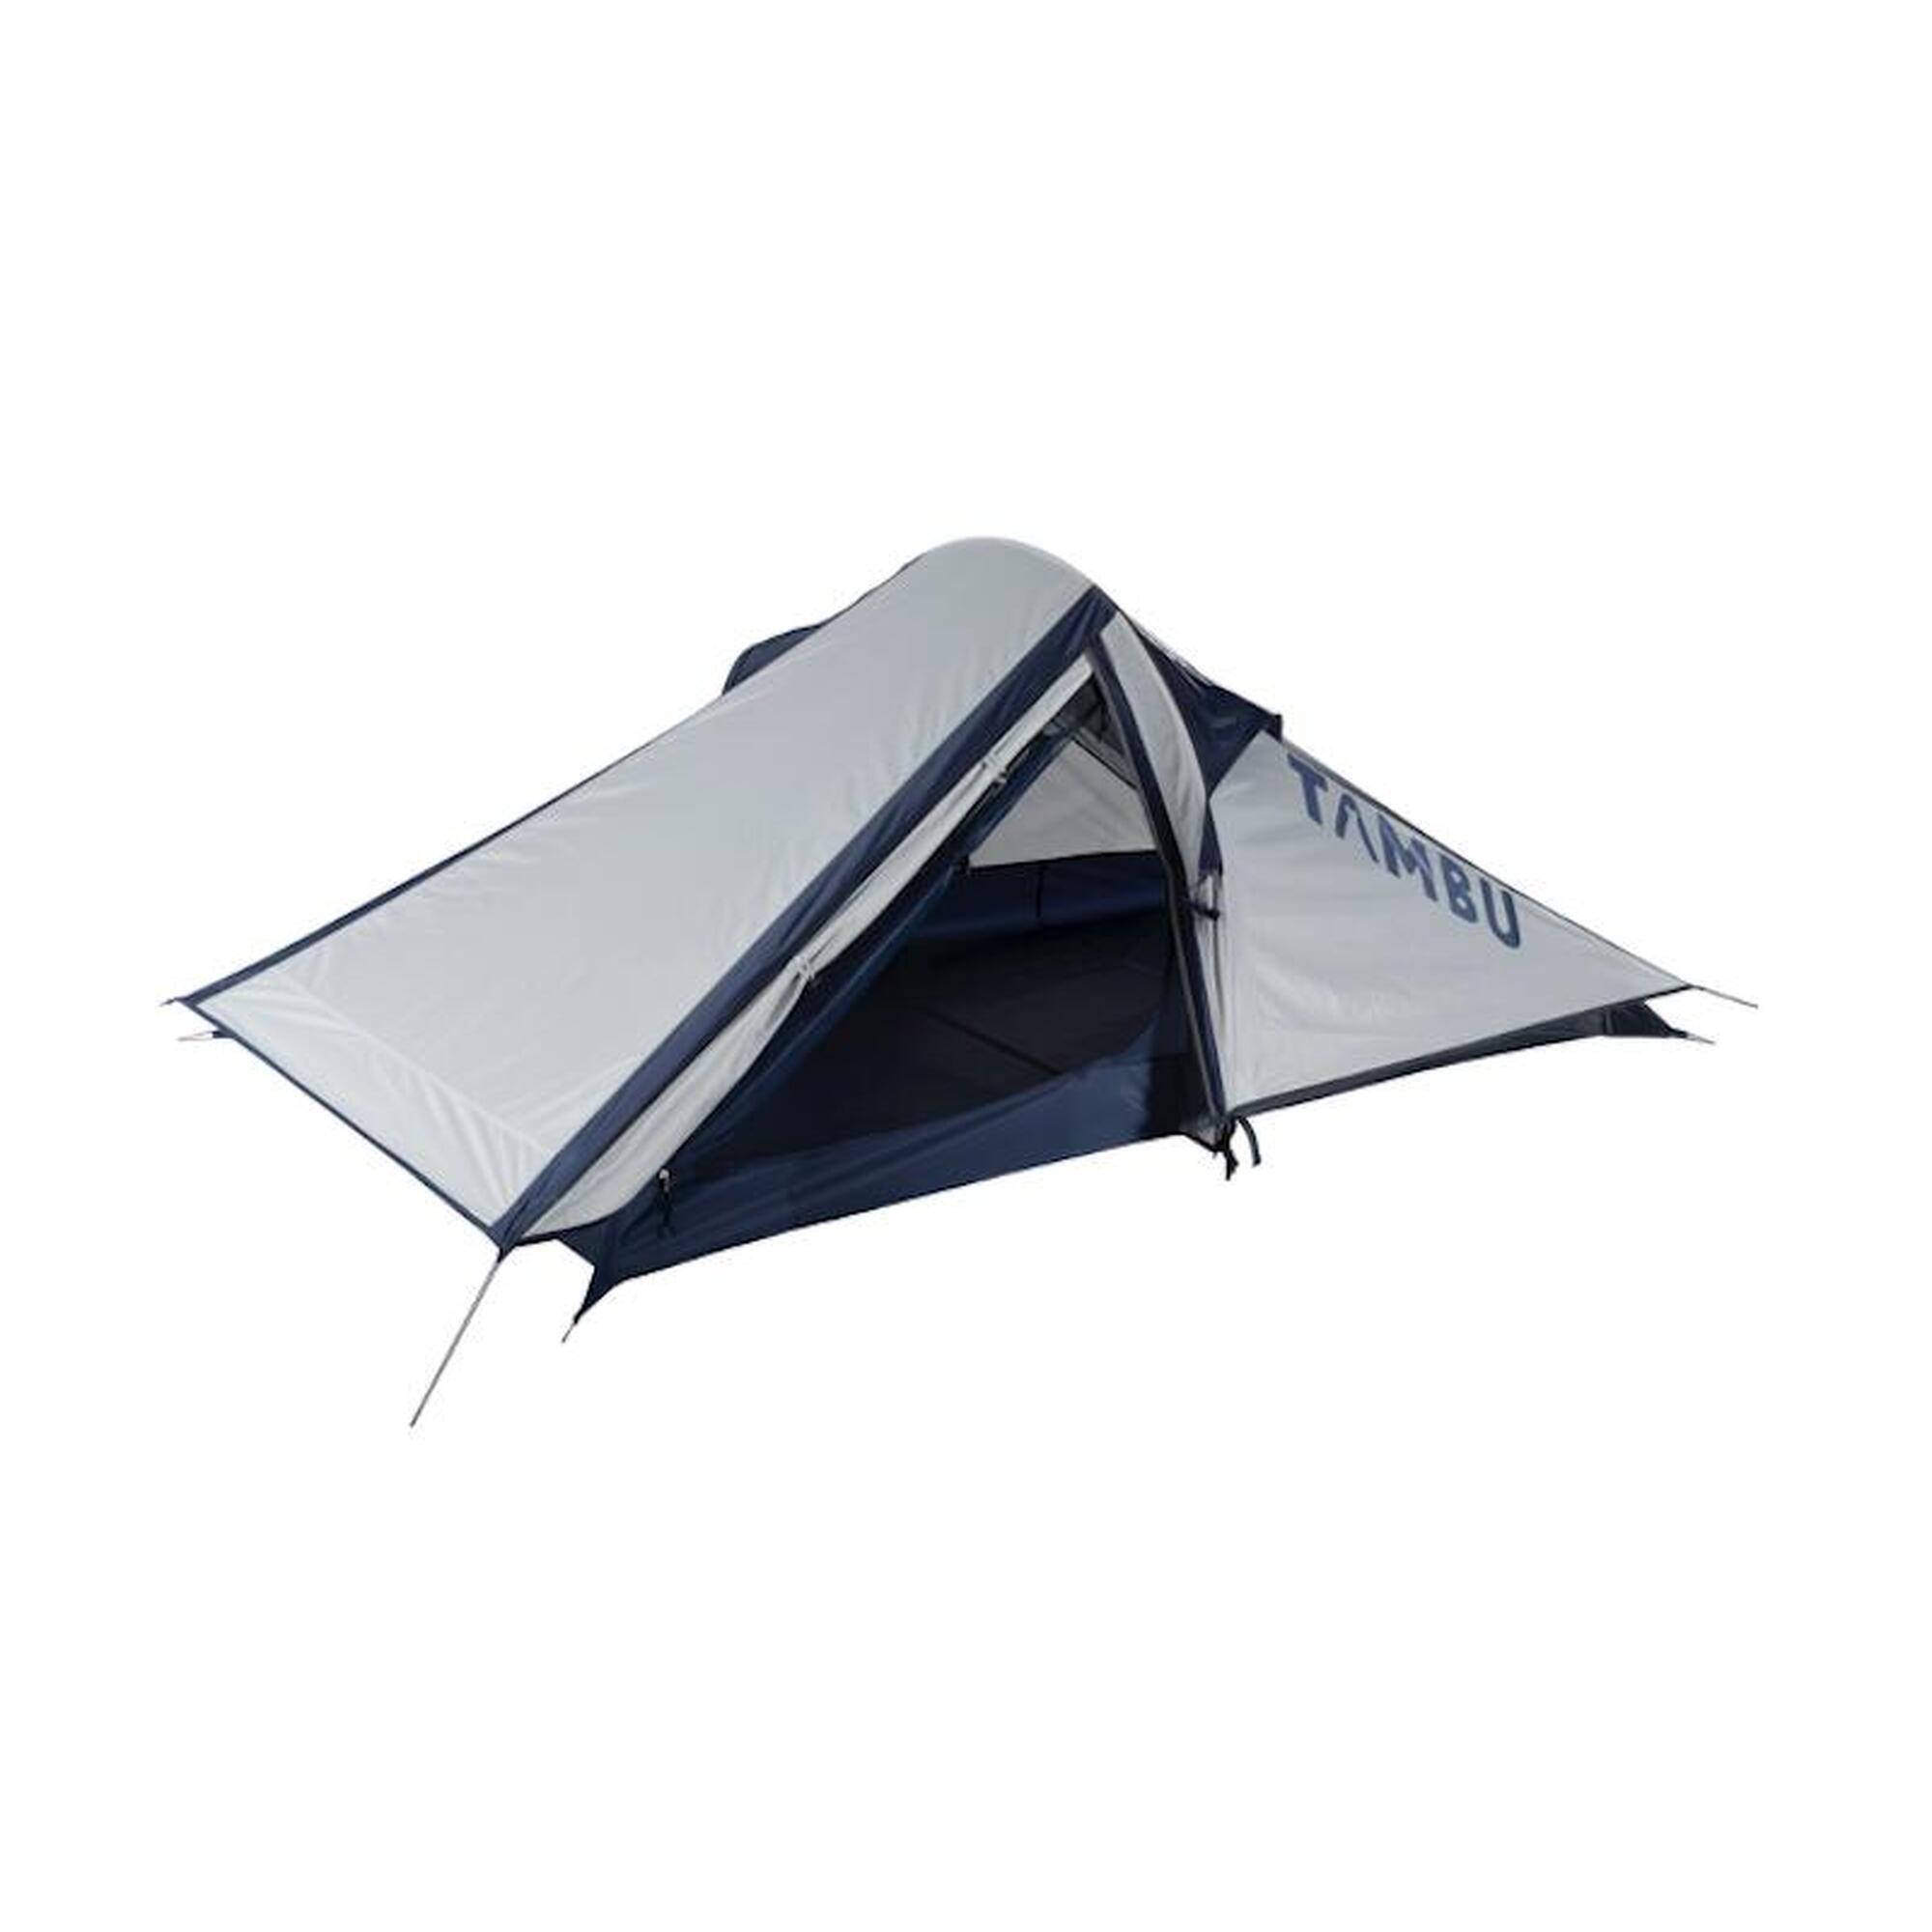 Палатка Tambu легкая треккинговая для 2 человек, светло-серый / синий палатка fhm antares 4 black out синий серый